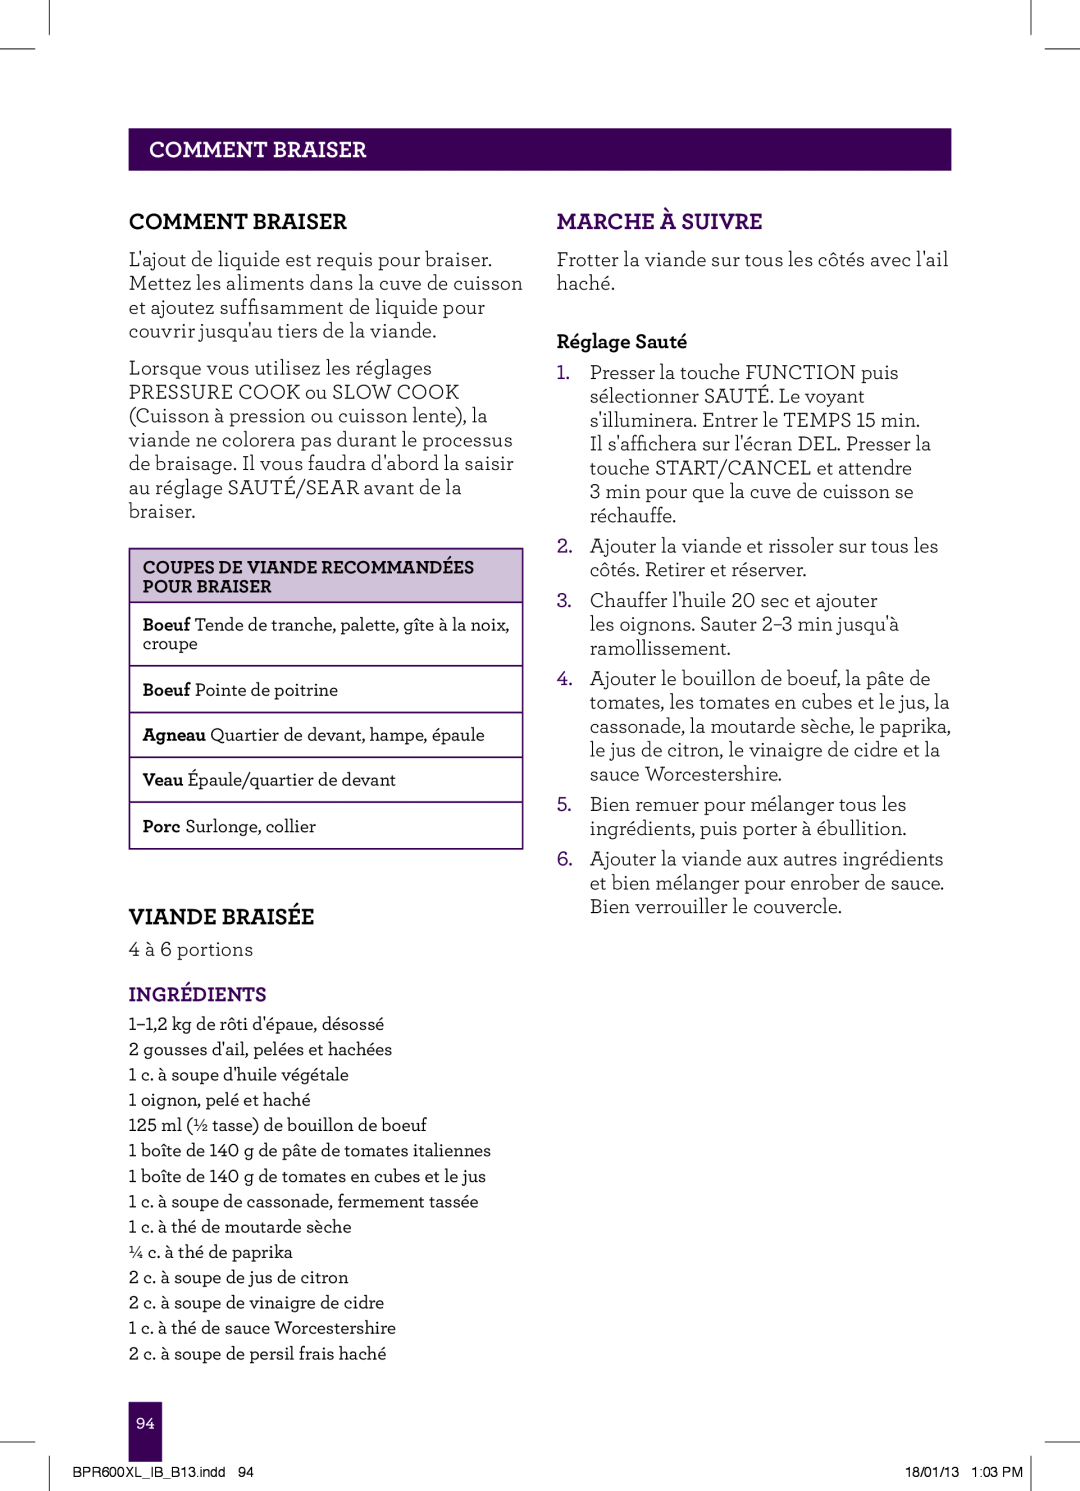 Breville BPR600XL manual PAgeCOMMENTheaderBRAISER, Comment Braiser, Viande Braisée, Marche À Suivre, Ingrédients 